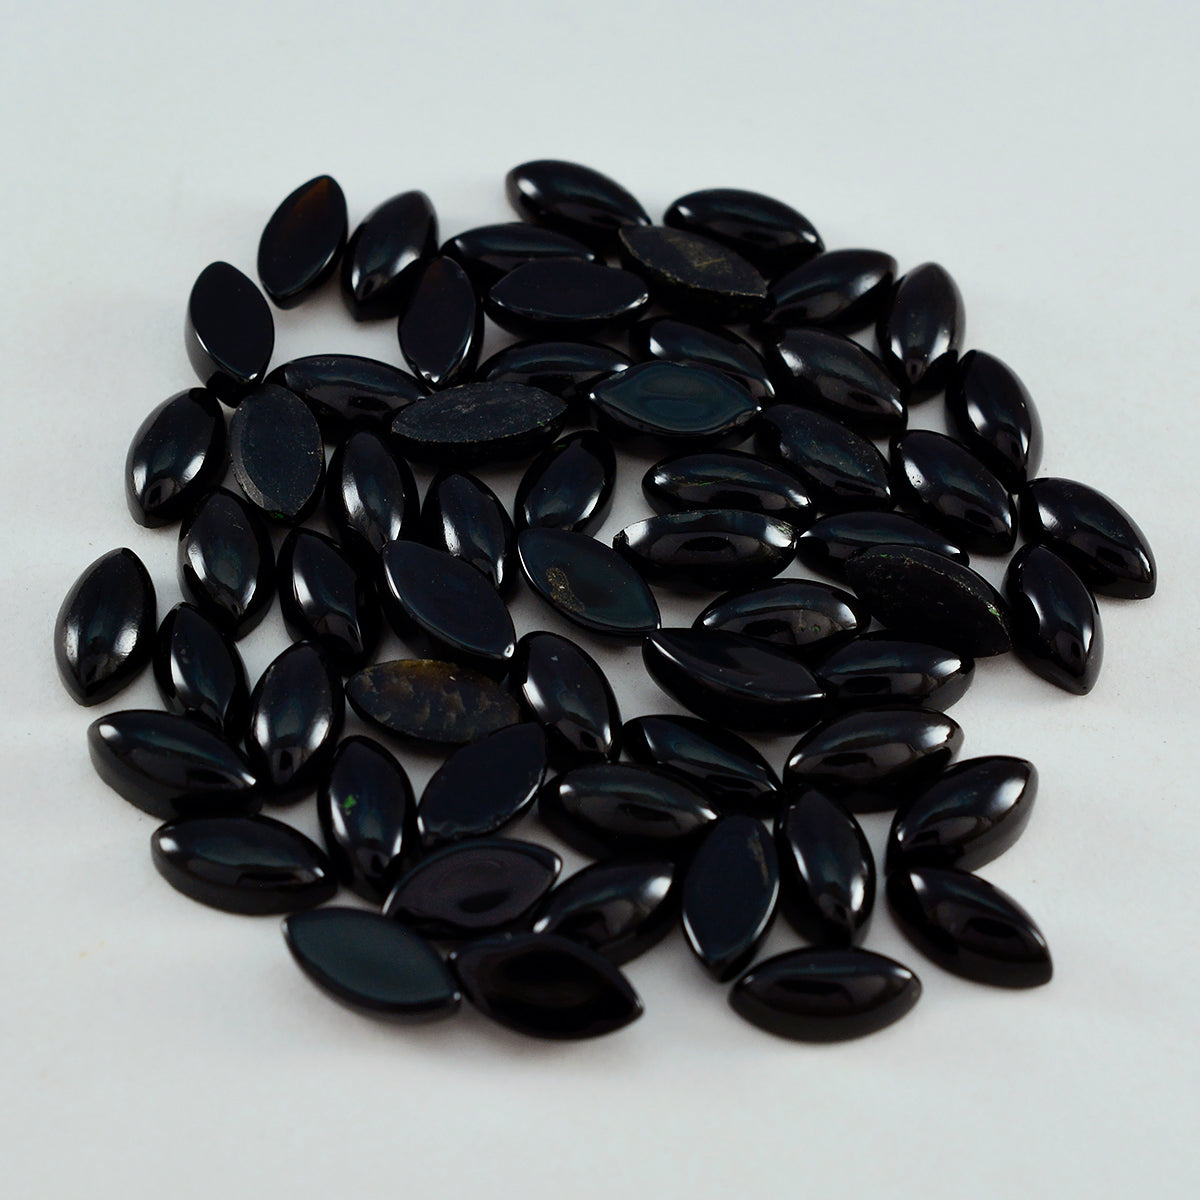 Riyogems 1 cabochon d'onyx noir 3x6 mm forme marquise qualité aaa pierre précieuse en vrac